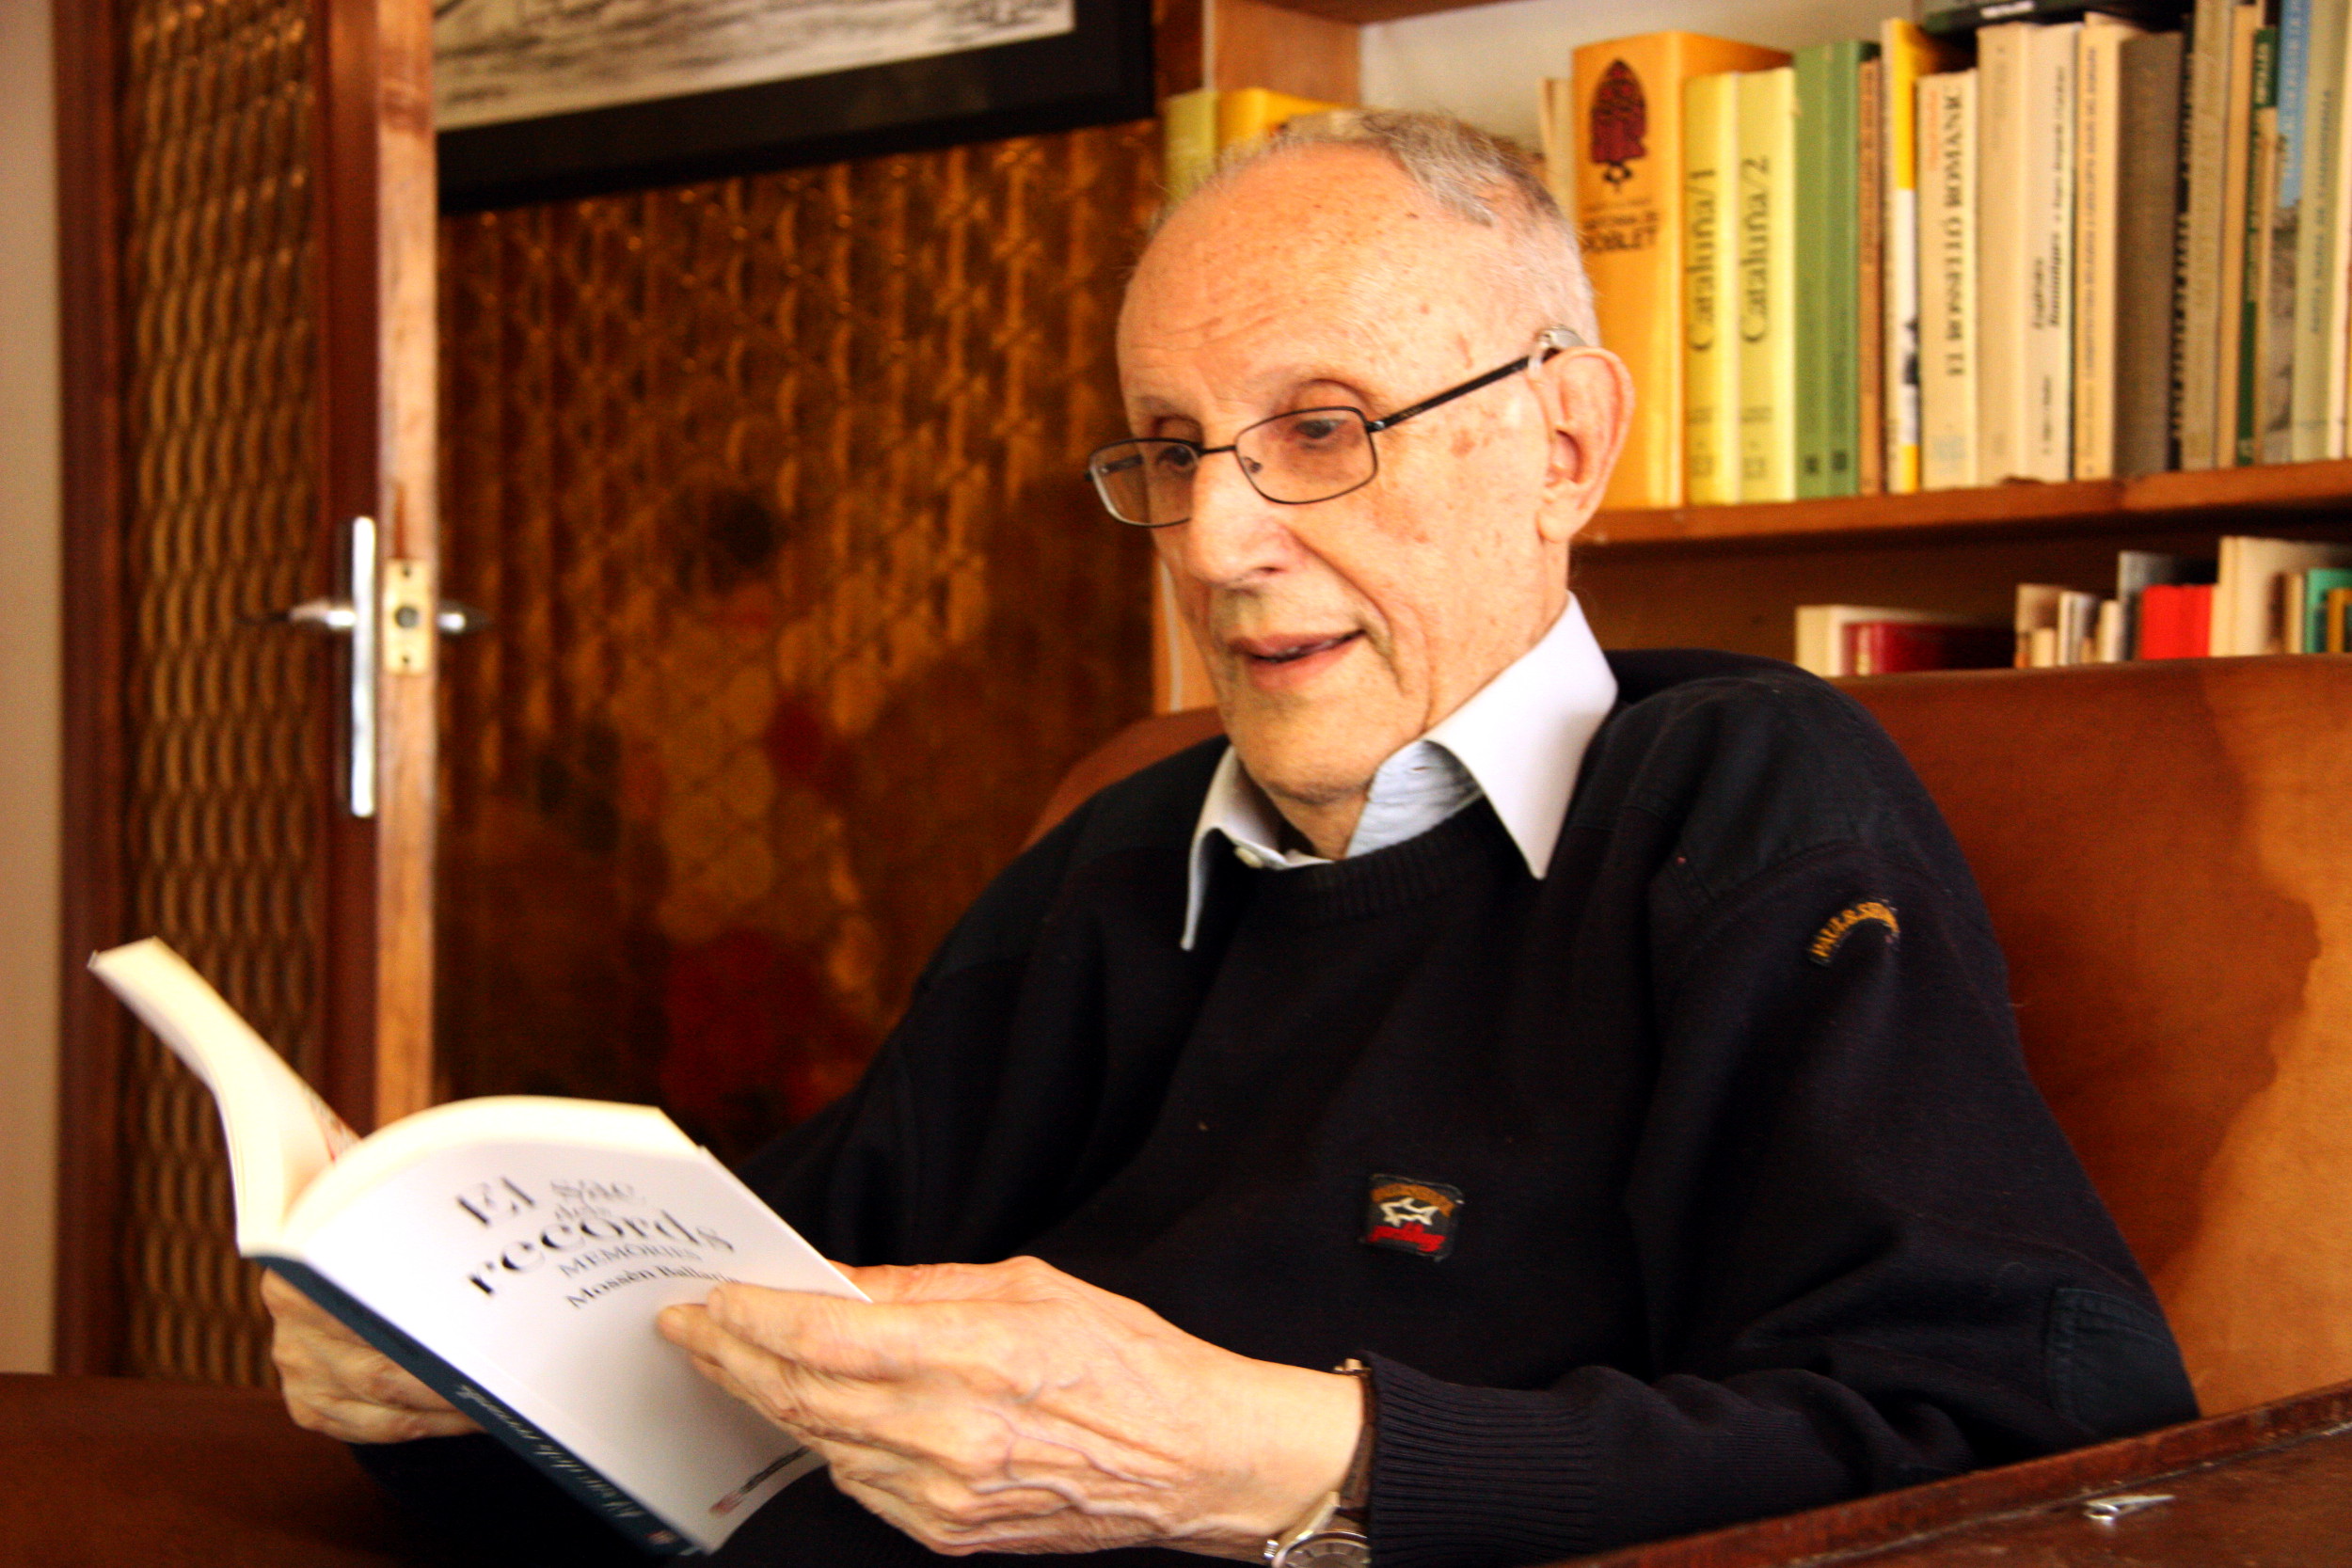 'Mossèn' Ballarín reading his last book, 'Sac de records' (by ACN)